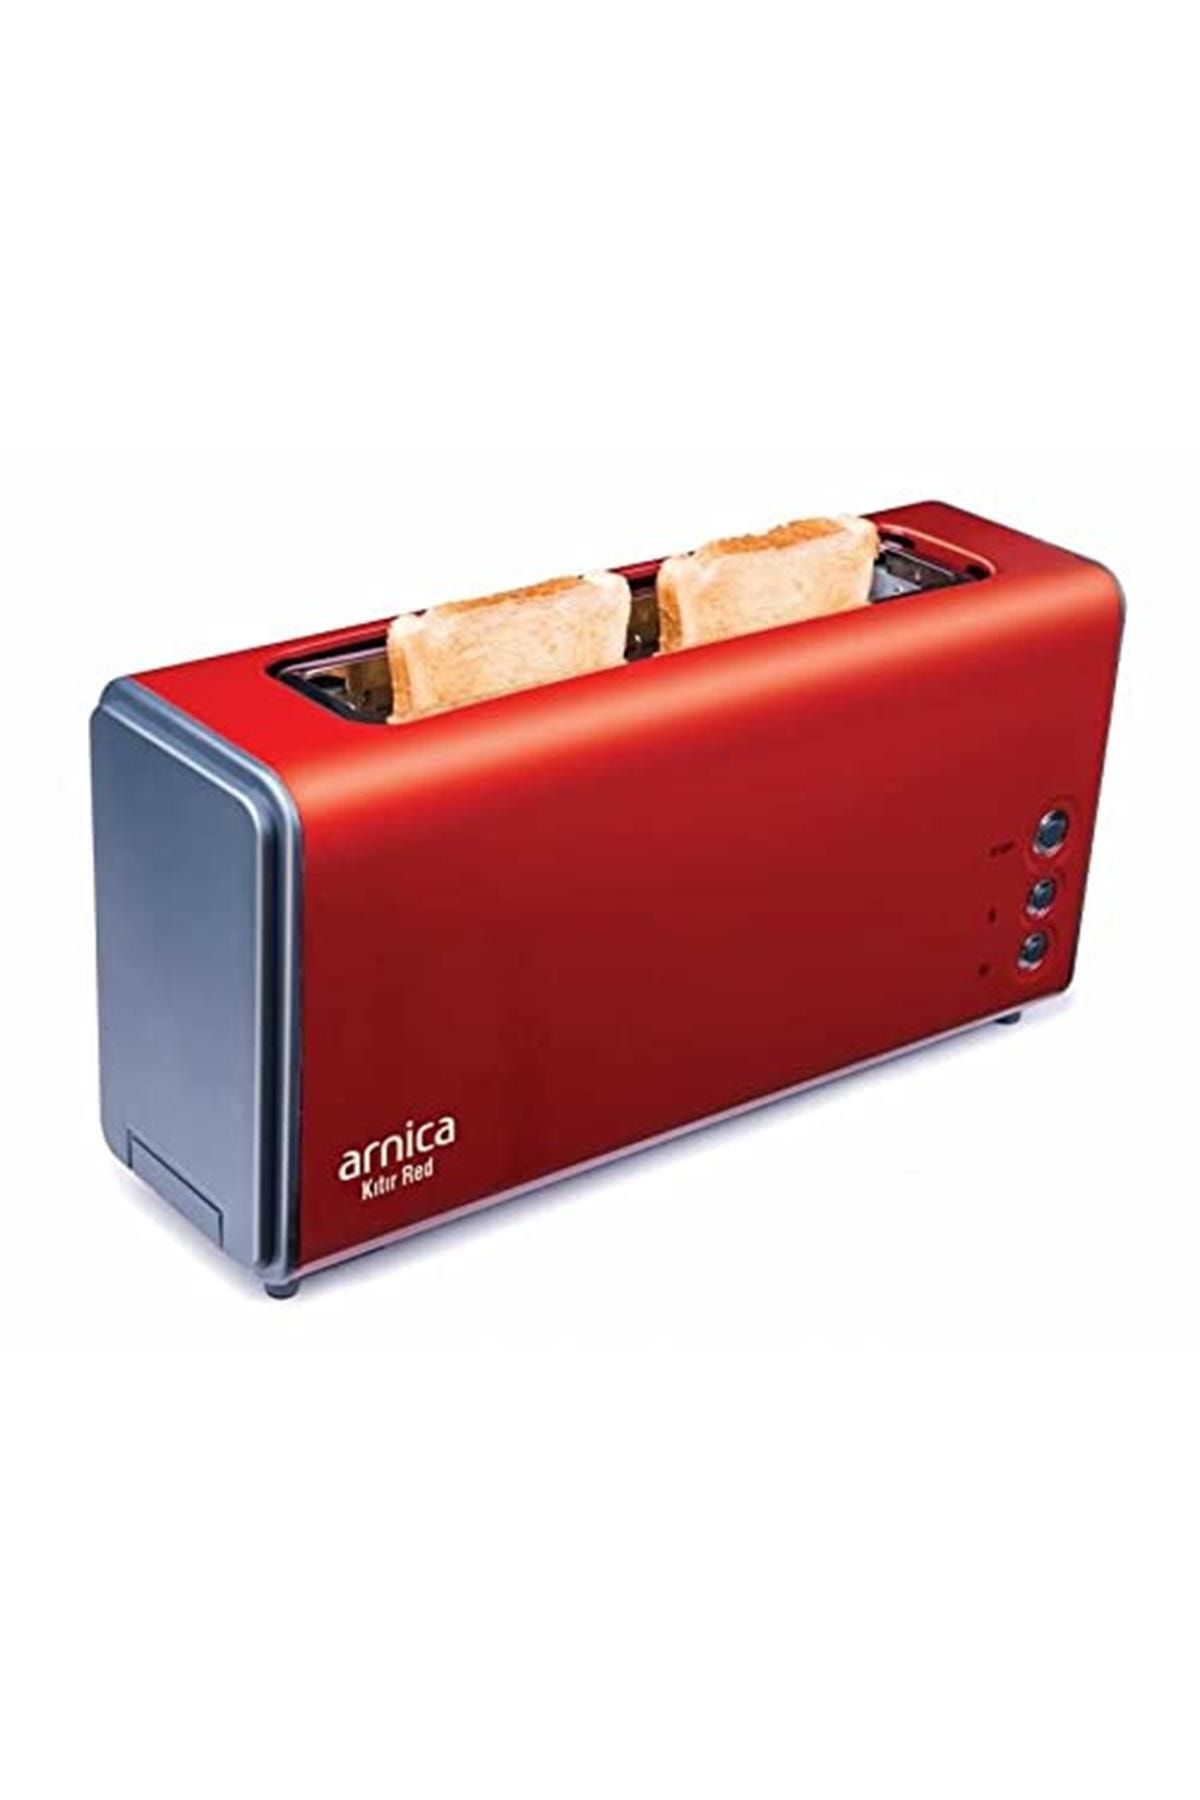 Arnica Marka: Kitir Red Ekmek Kizartma Makinesi Kategori: Mutfak Düzenleyiciler